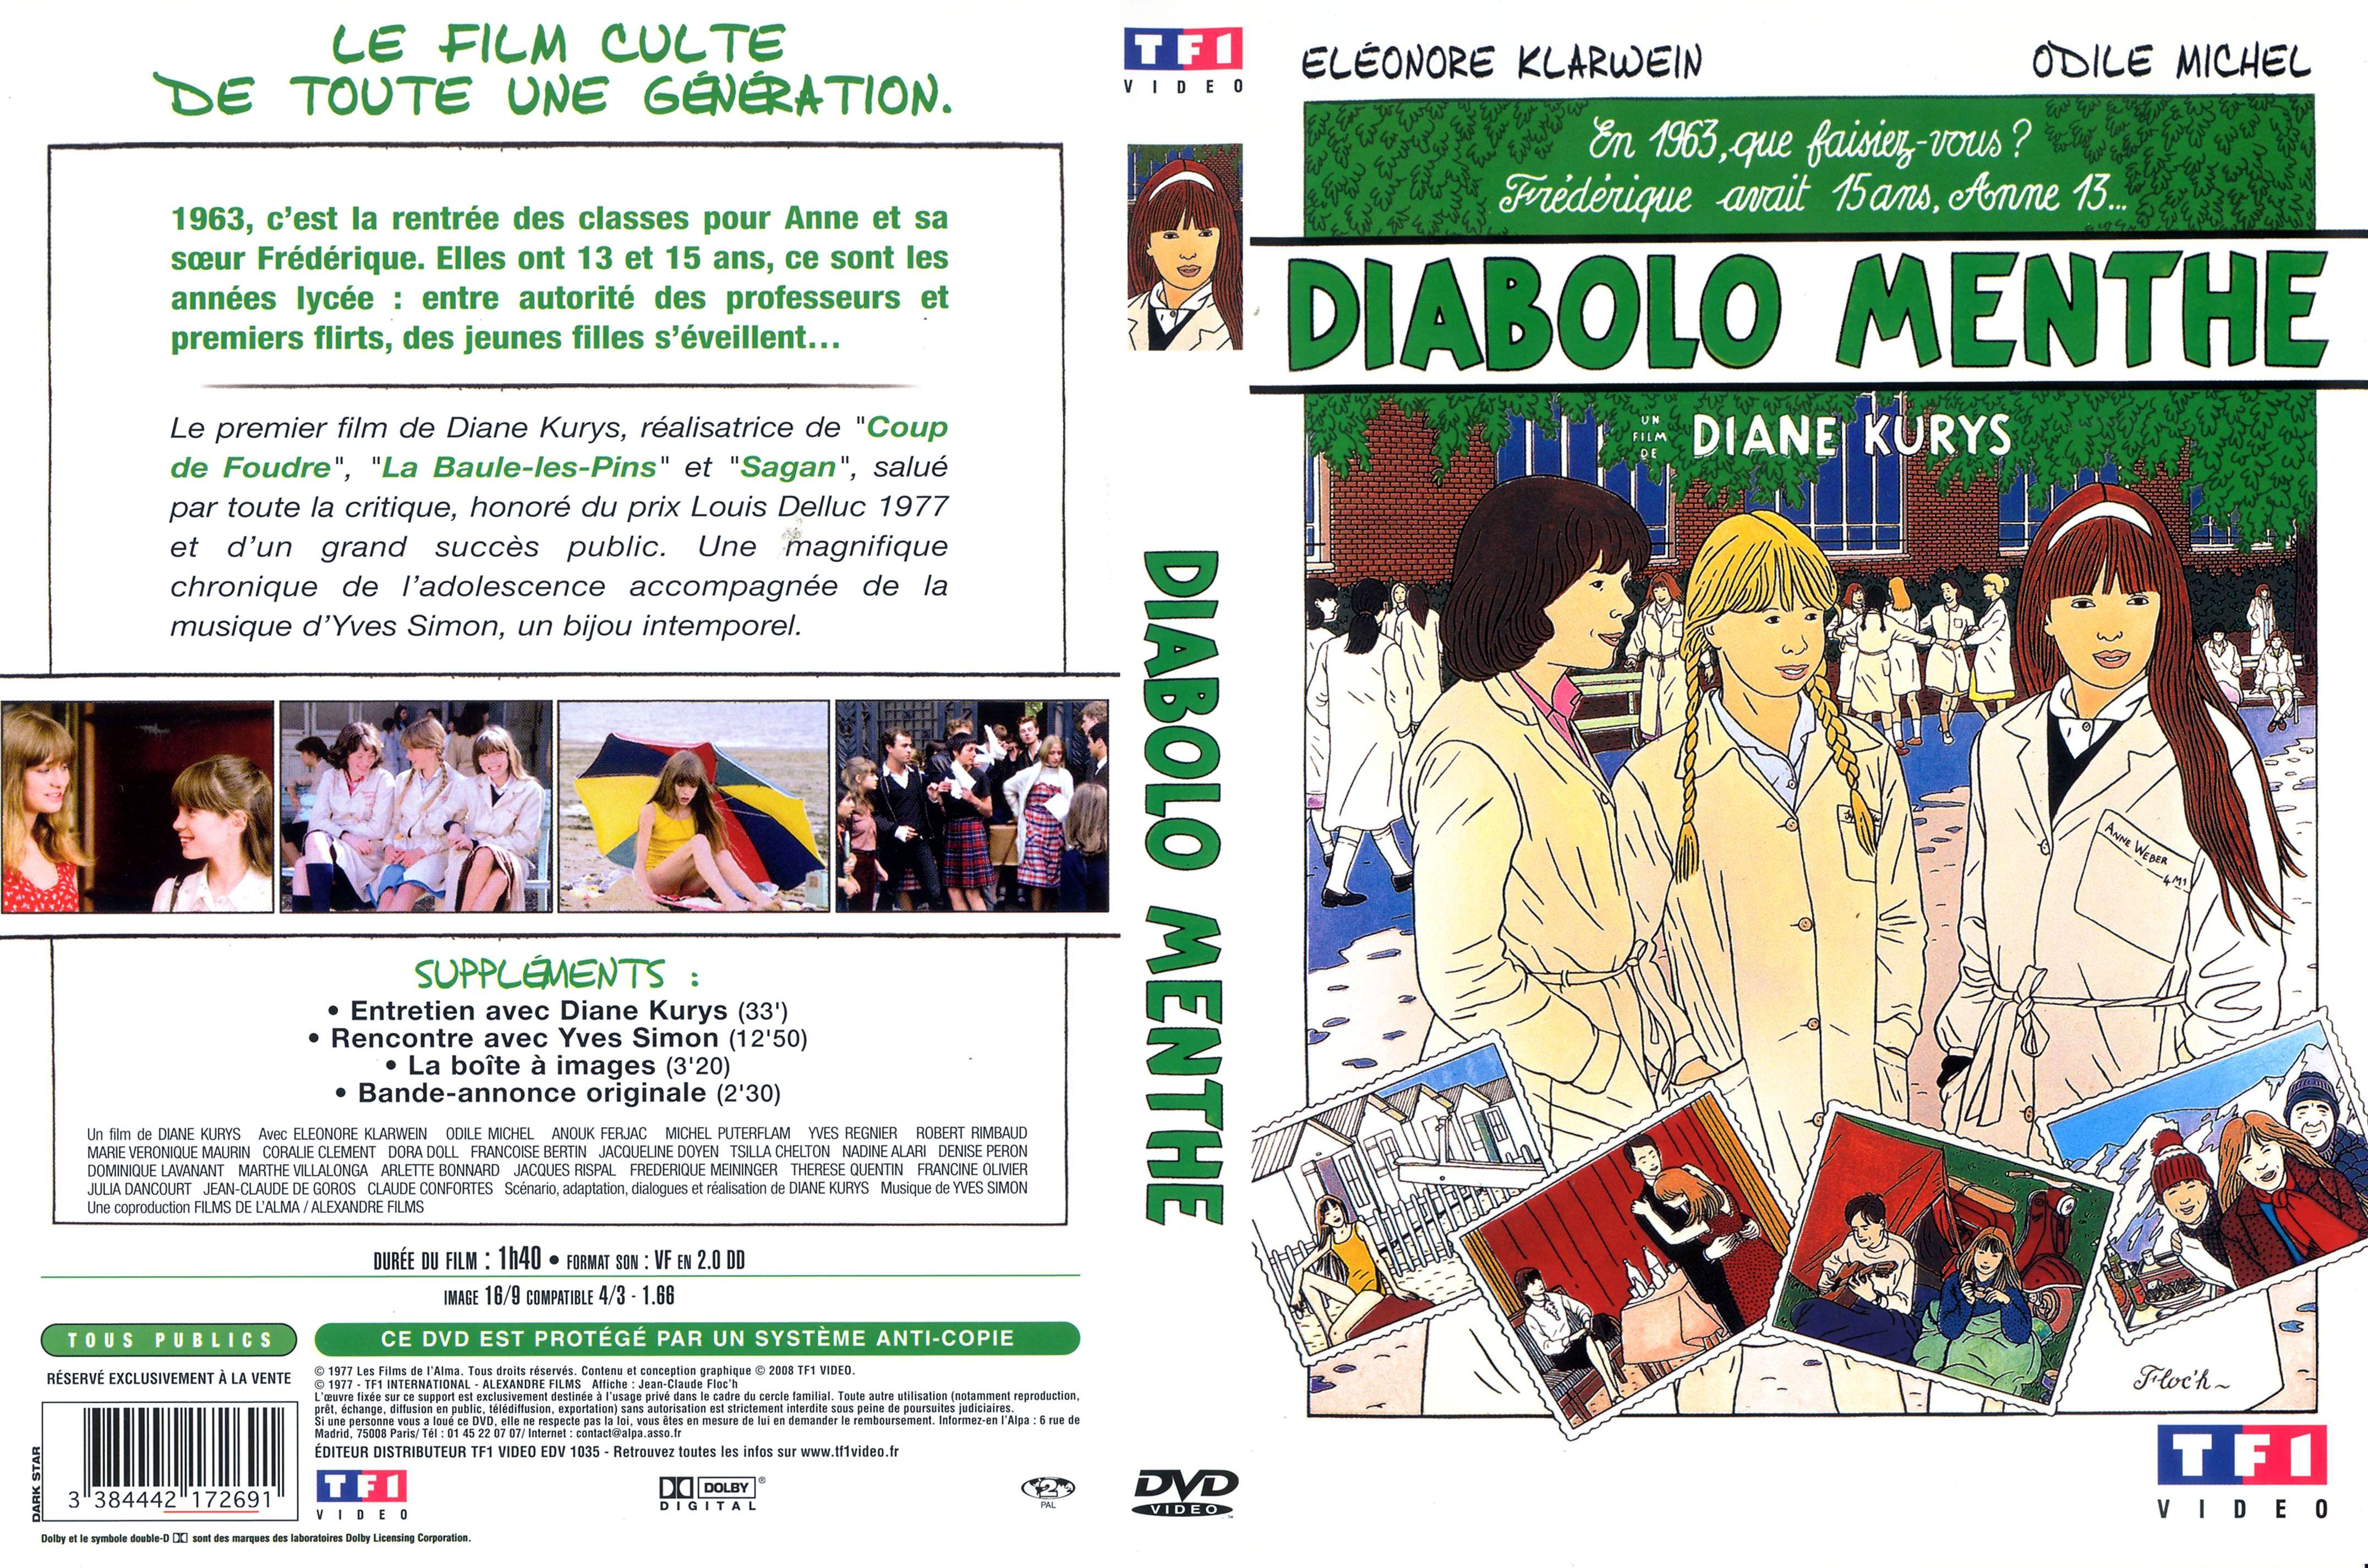 Jaquette DVD Diabolo menthe